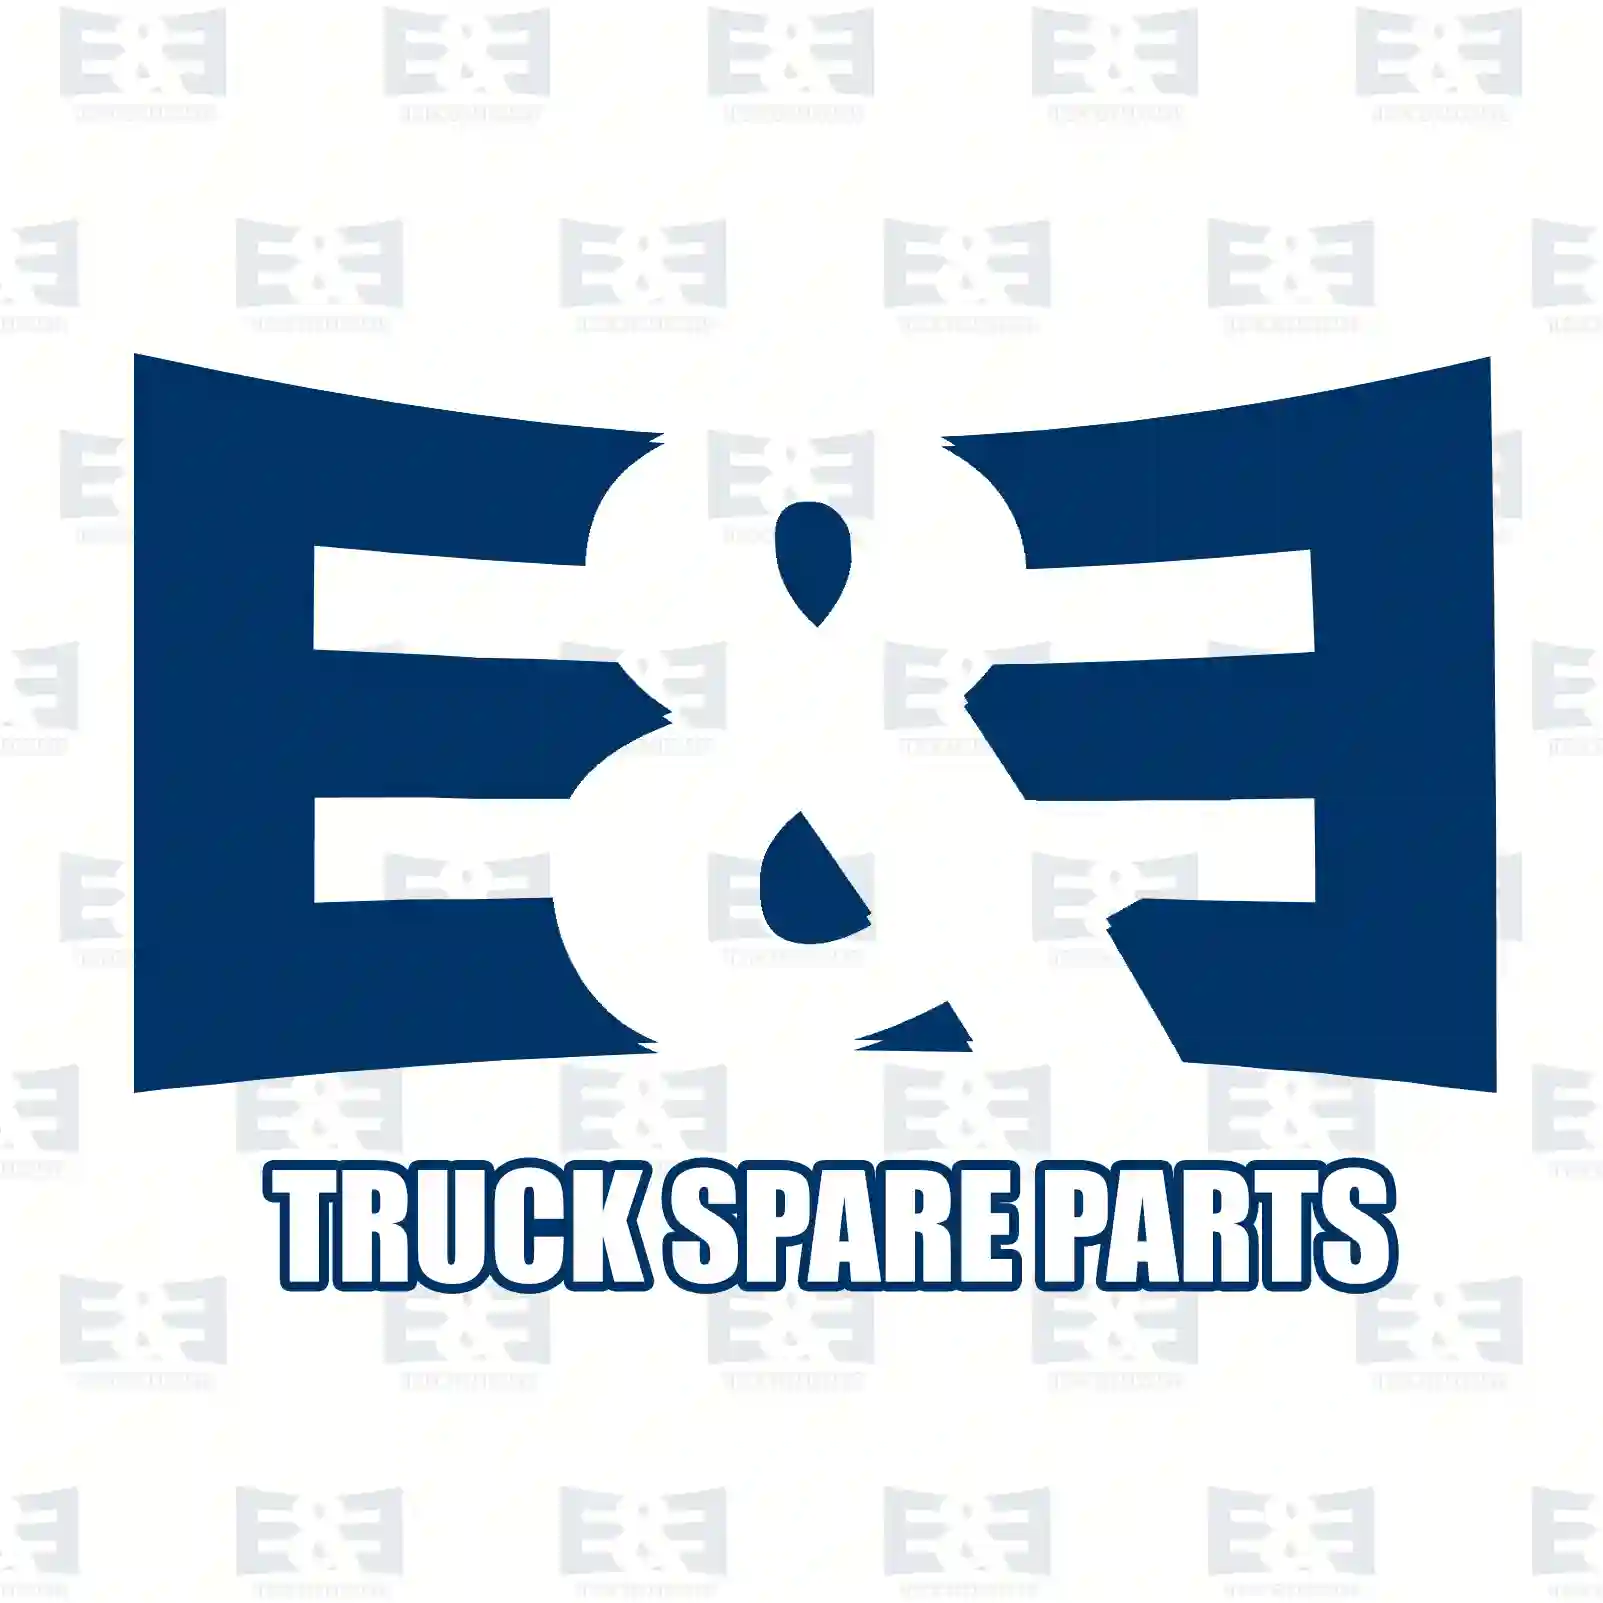 Bushing, complete, 2E2282709, 0003250485S1, 0003250985S1, 9473250050S1 ||  2E2282709 E&E Truck Spare Parts | Truck Spare Parts, Auotomotive Spare Parts Bushing, complete, 2E2282709, 0003250485S1, 0003250985S1, 9473250050S1 ||  2E2282709 E&E Truck Spare Parts | Truck Spare Parts, Auotomotive Spare Parts